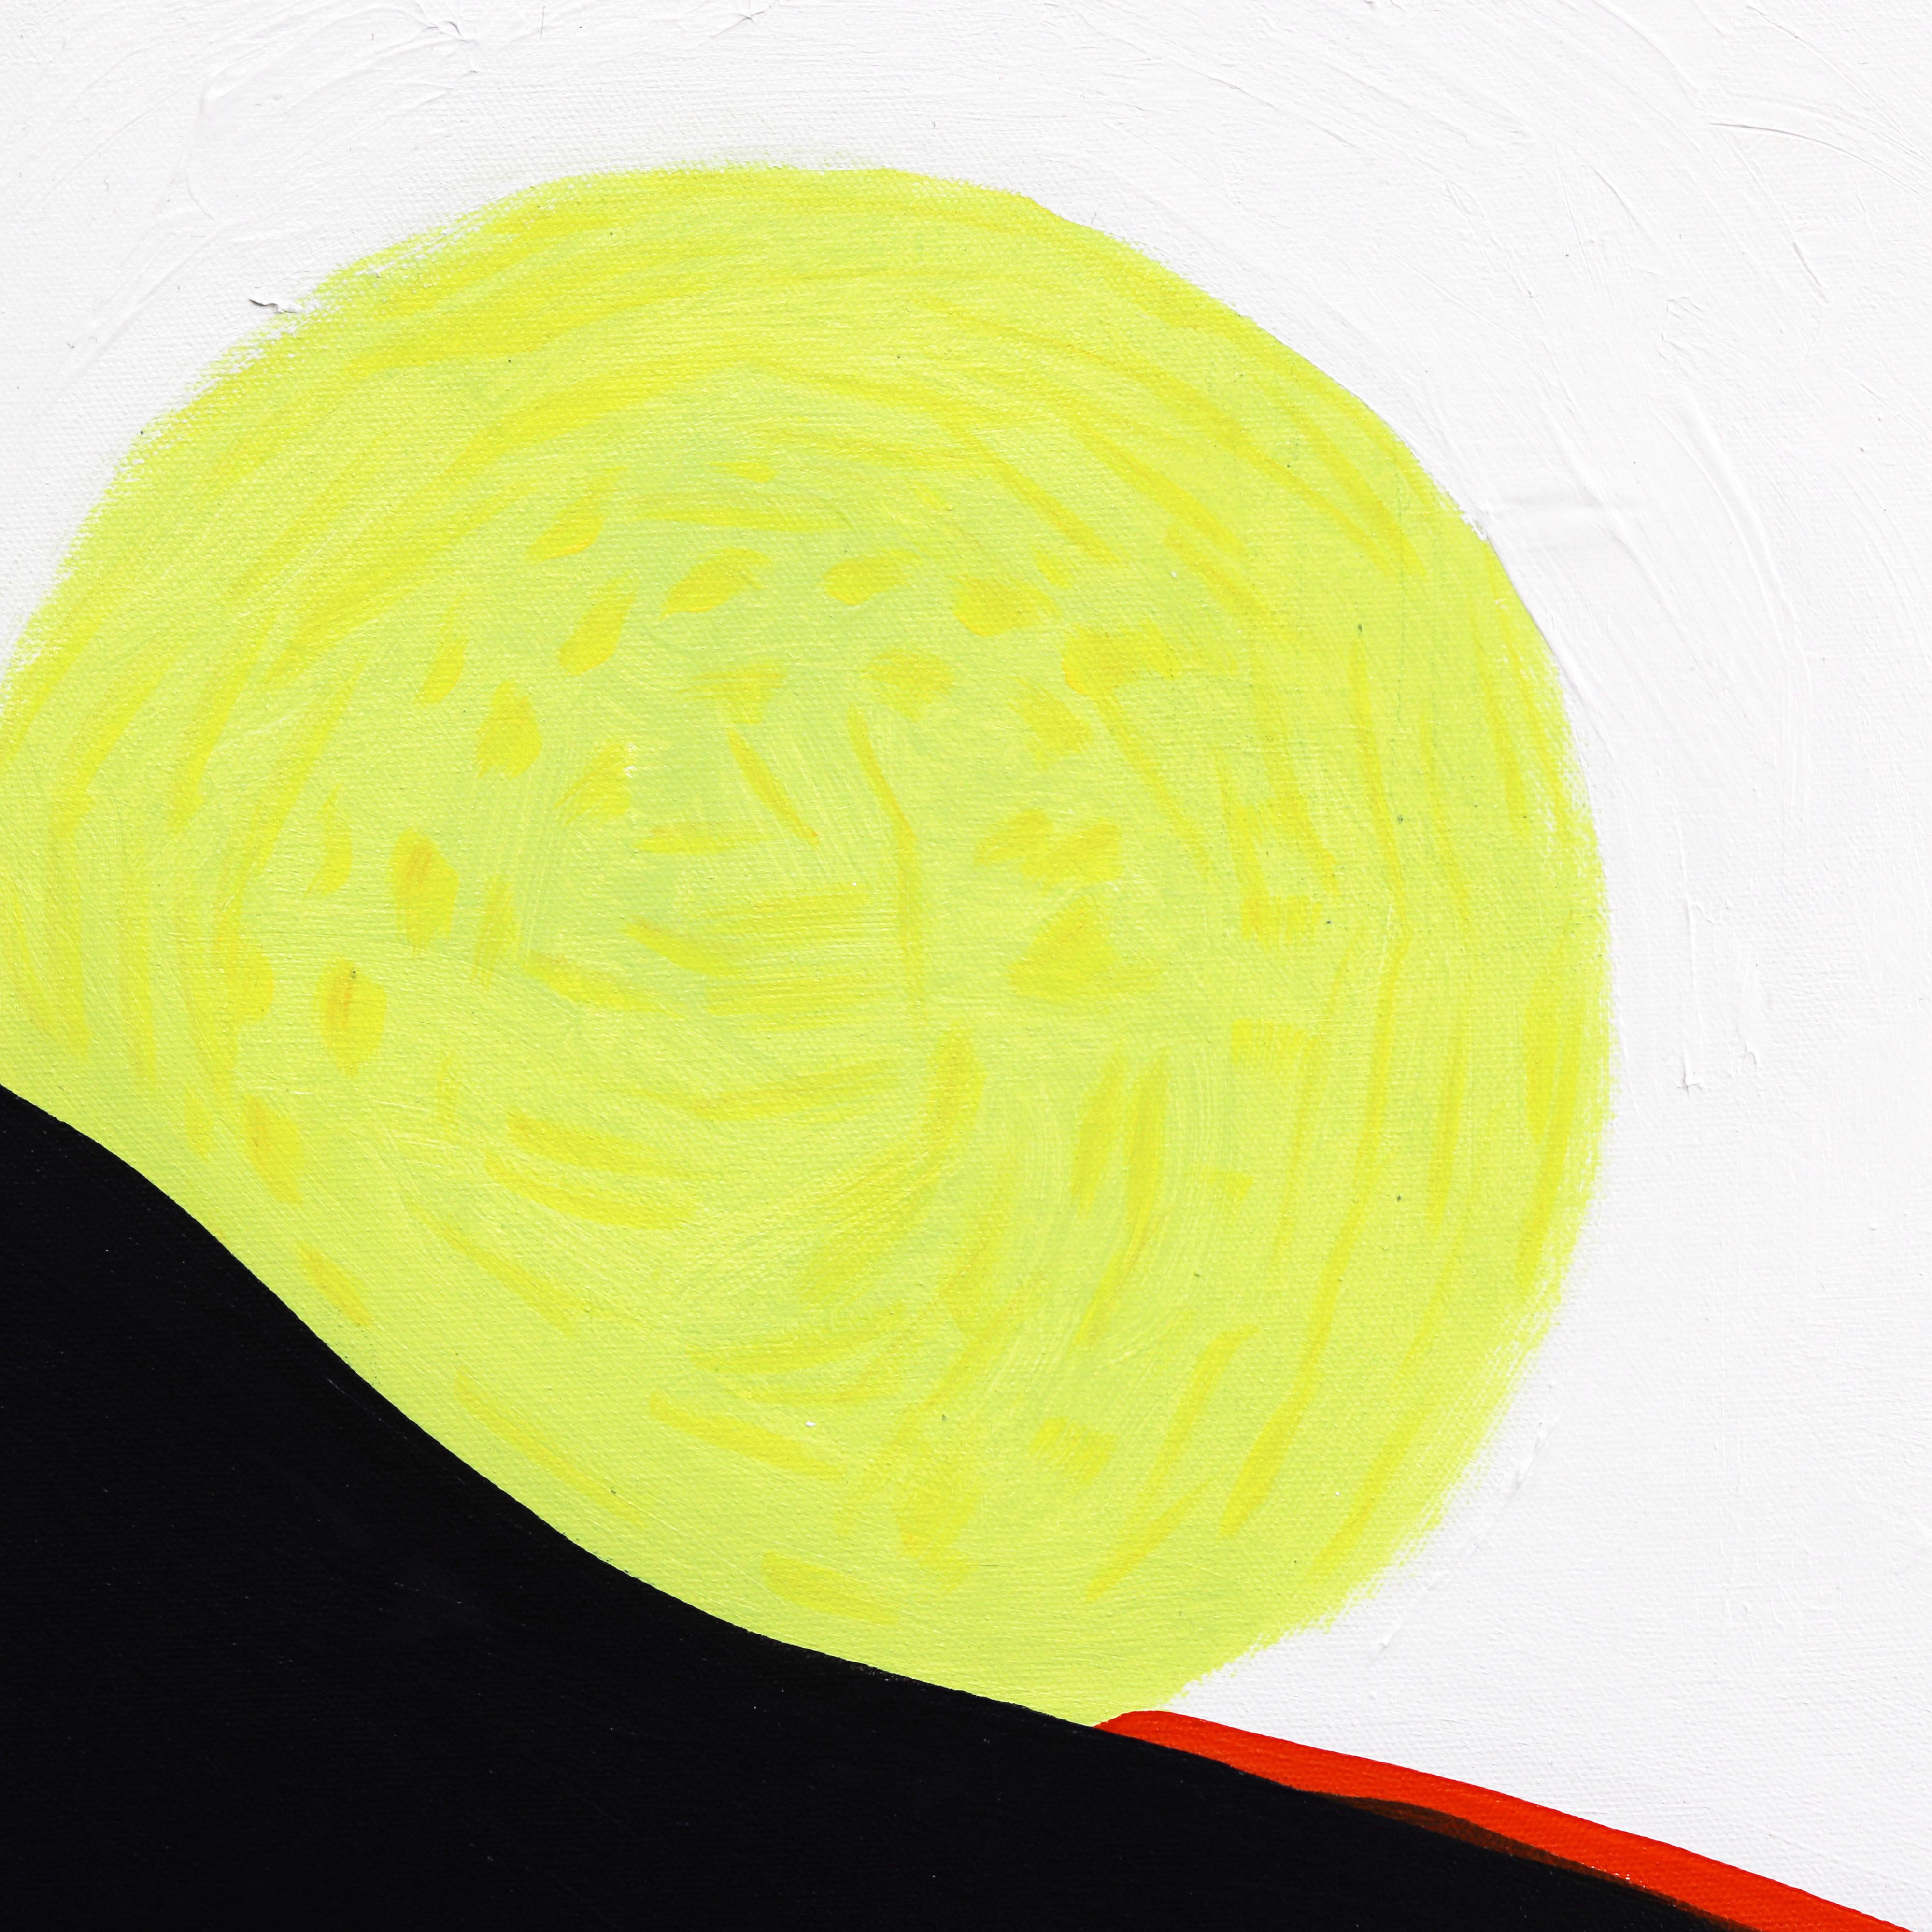 Jodi Fuchs schafft moderne abstrakte expressionistische Kunstwerke mit unbestreitbarer Energie. Die jahrelange Beschäftigung mit den metaphysischen Aspekten des Lebens hat ihre Arbeit im Studio beeinflusst. Hier ist der Akt der Schöpfung die Muse.